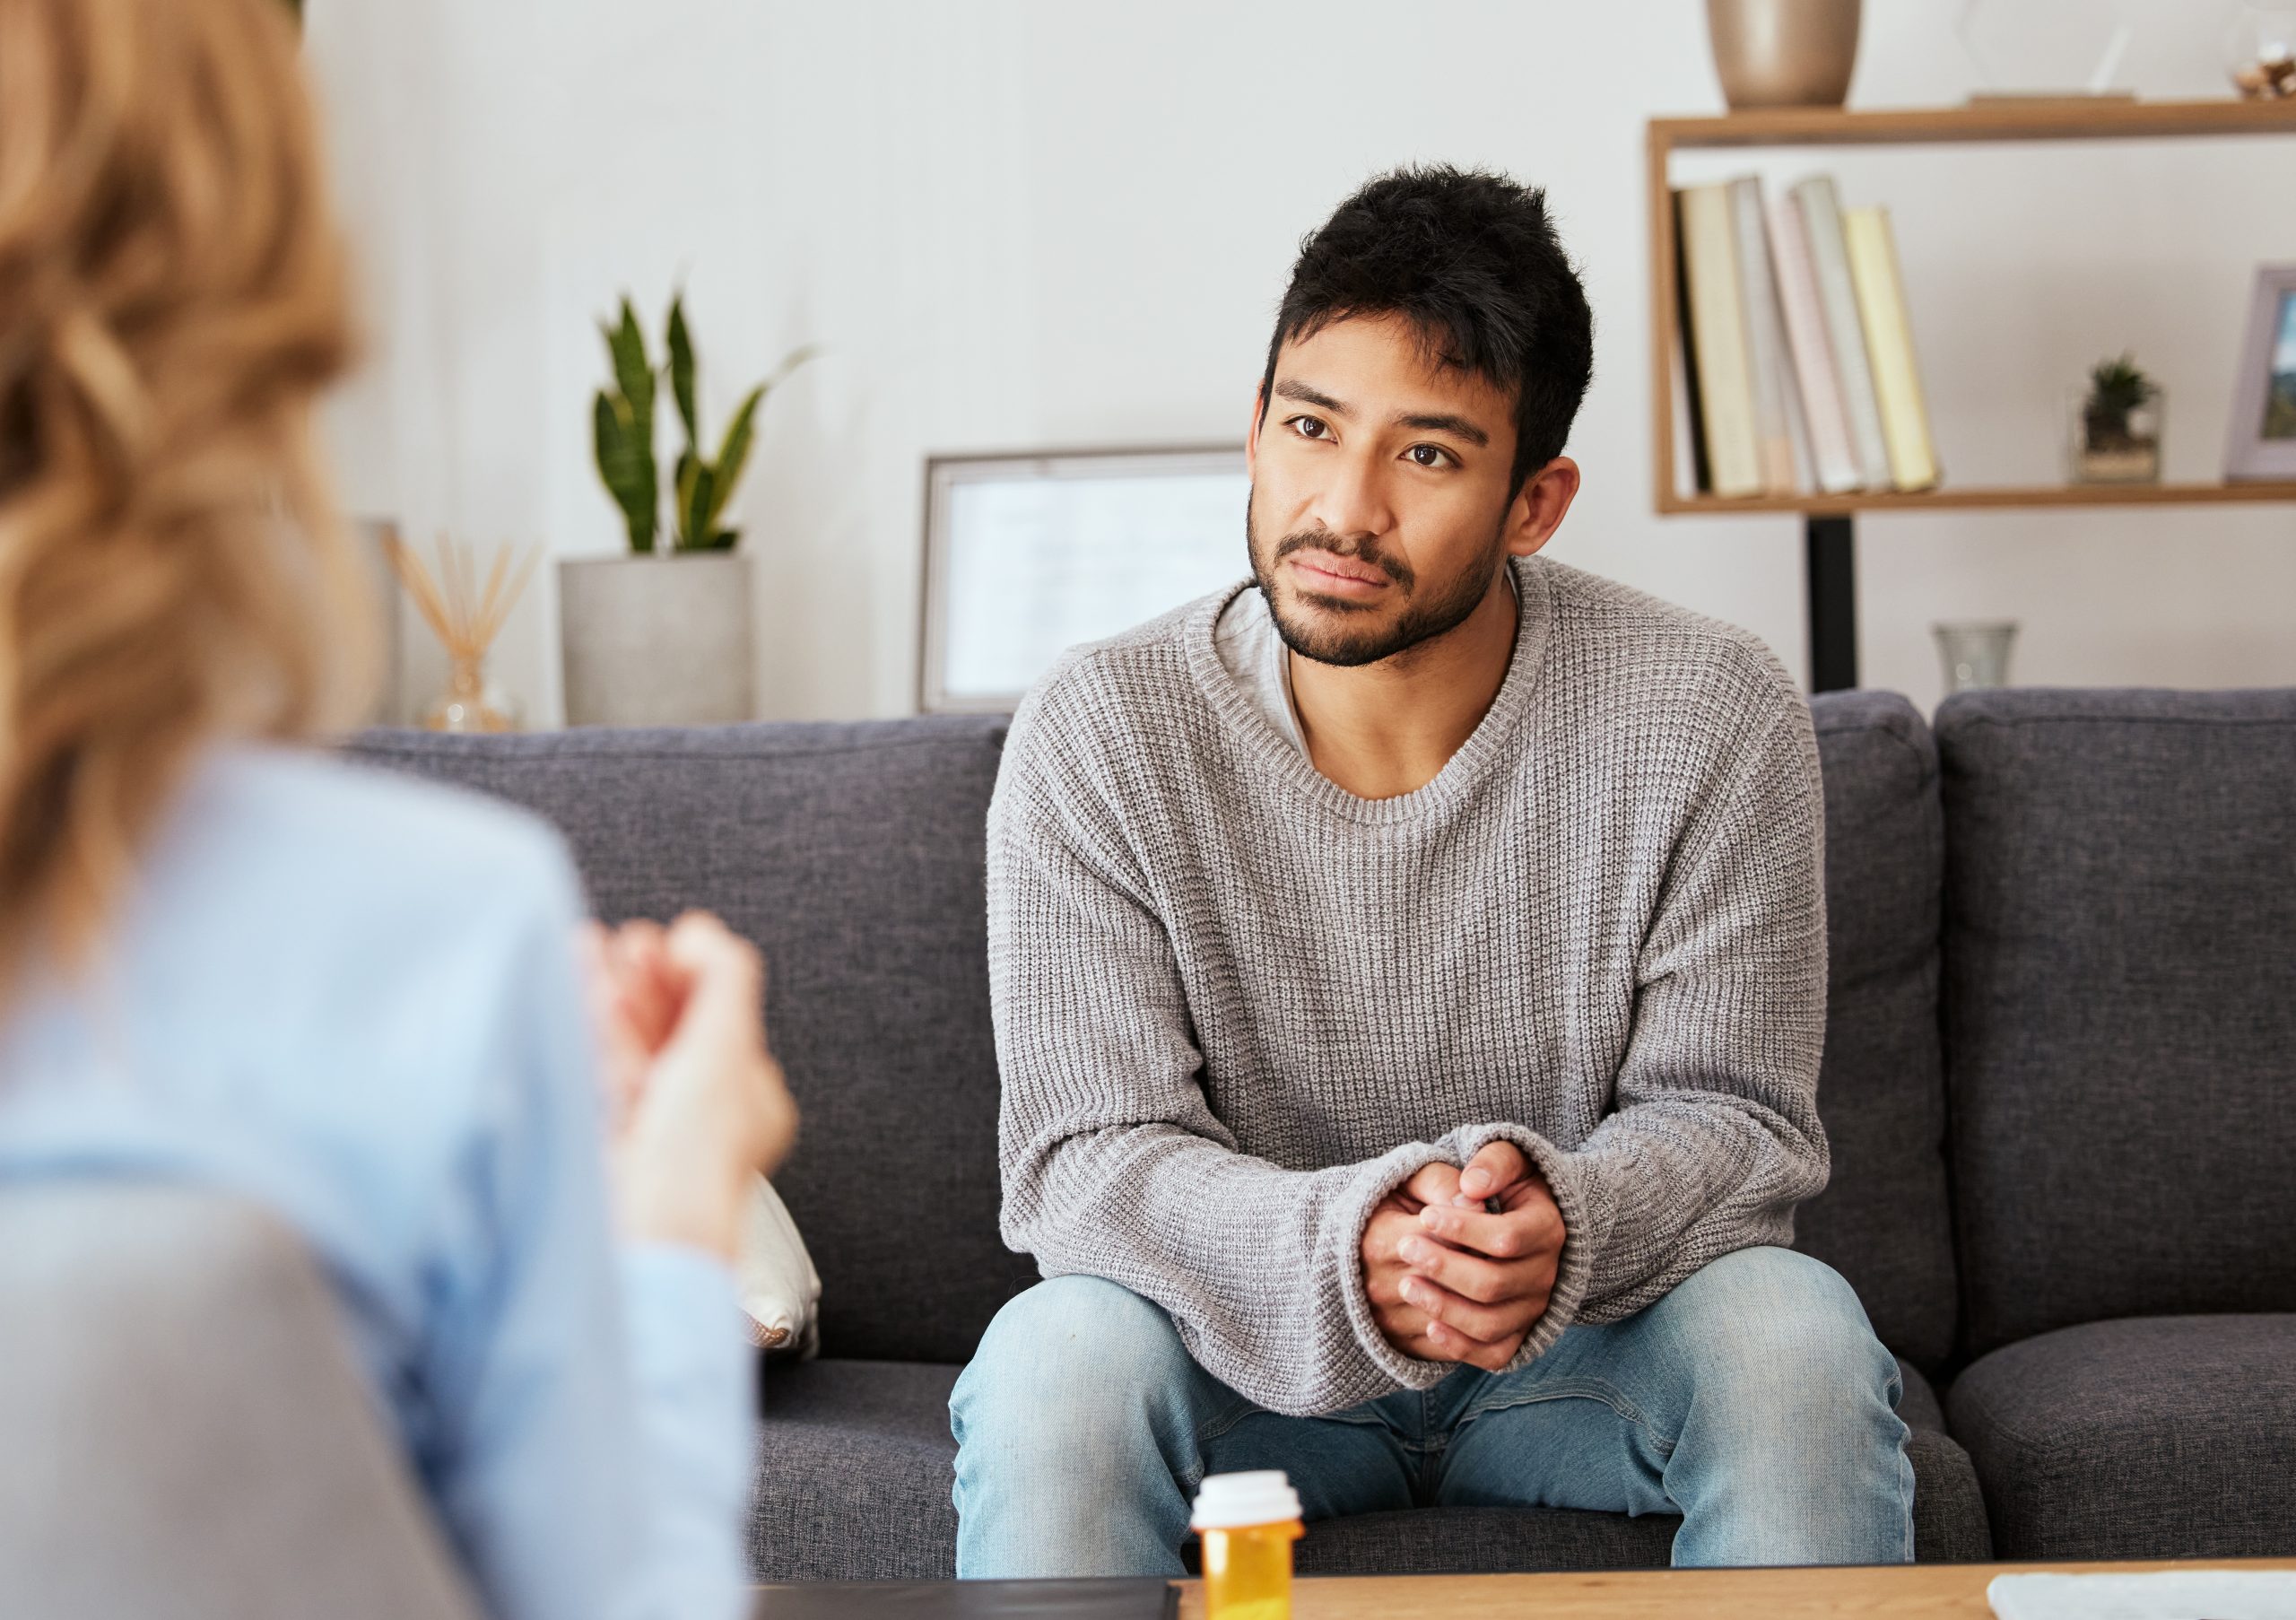 Some Men Afraid to Discuss Their Health, Mental Health